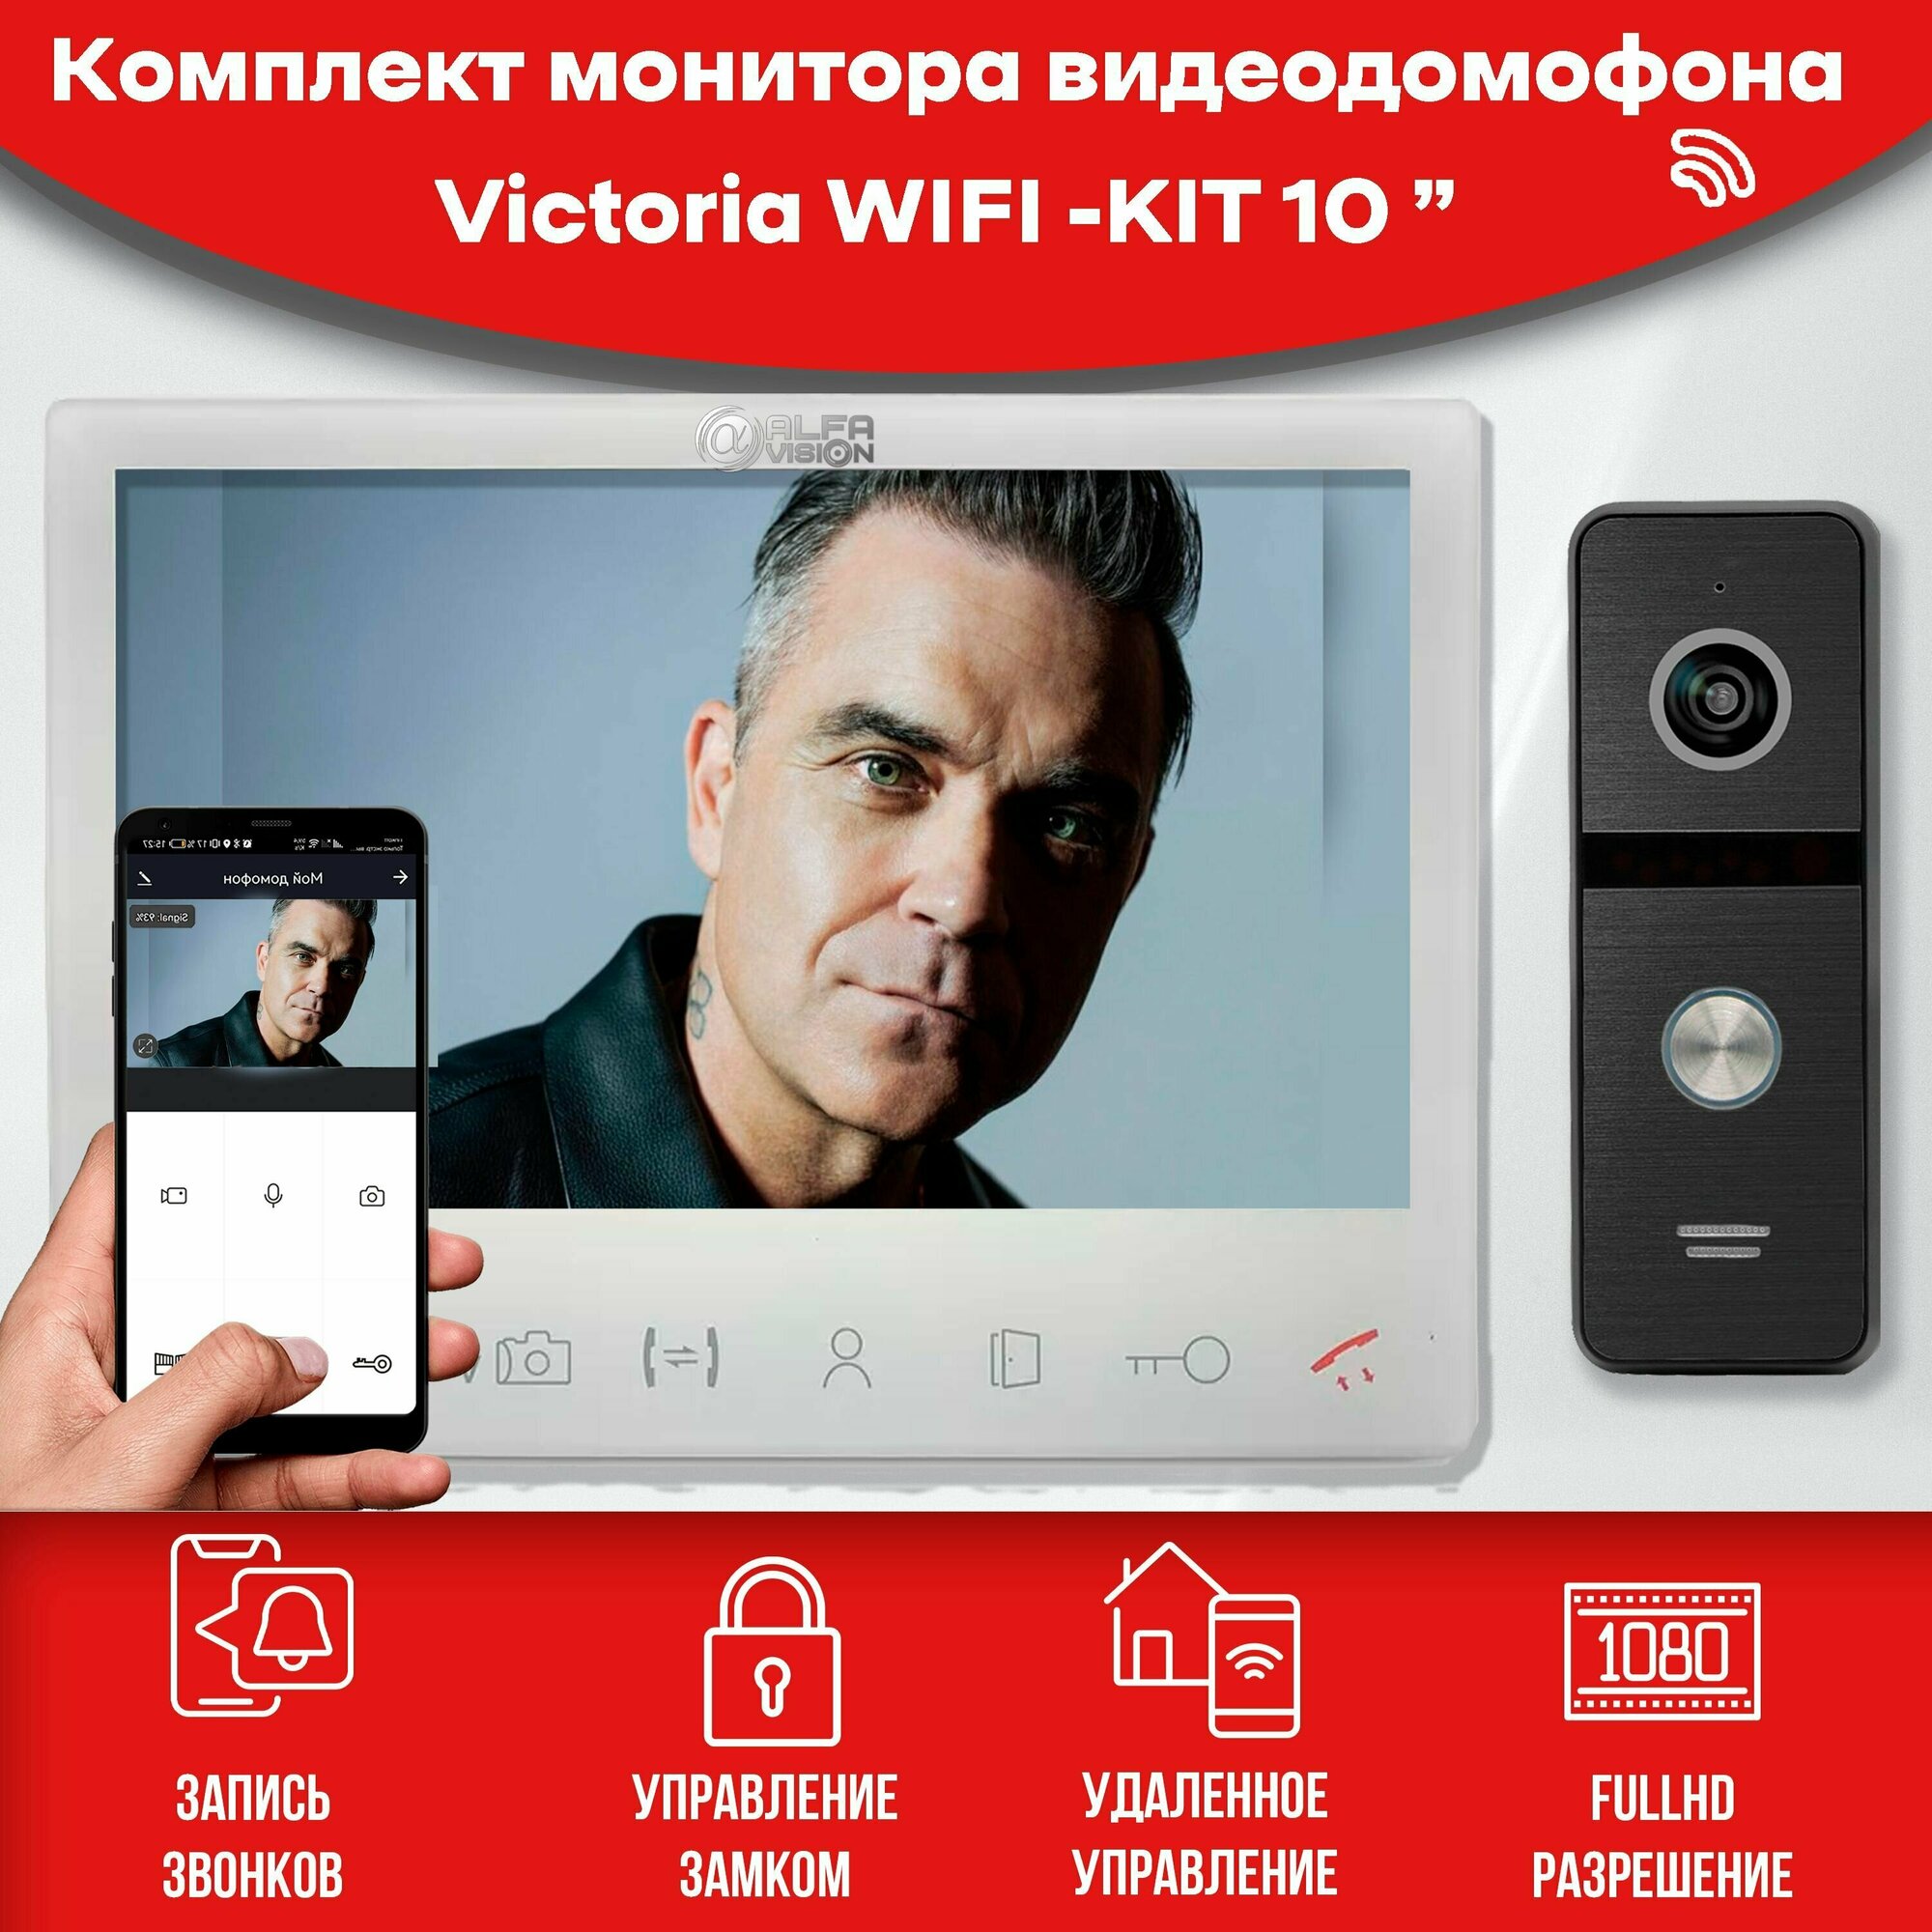 Комплект видеодомофона VICTORIA WIFI-KIT+вызывная панель(911bl) Full HD. Экран 10". Поддержка Android и IOS. Совместим с подъездным домофоном через модуль сопряжения.